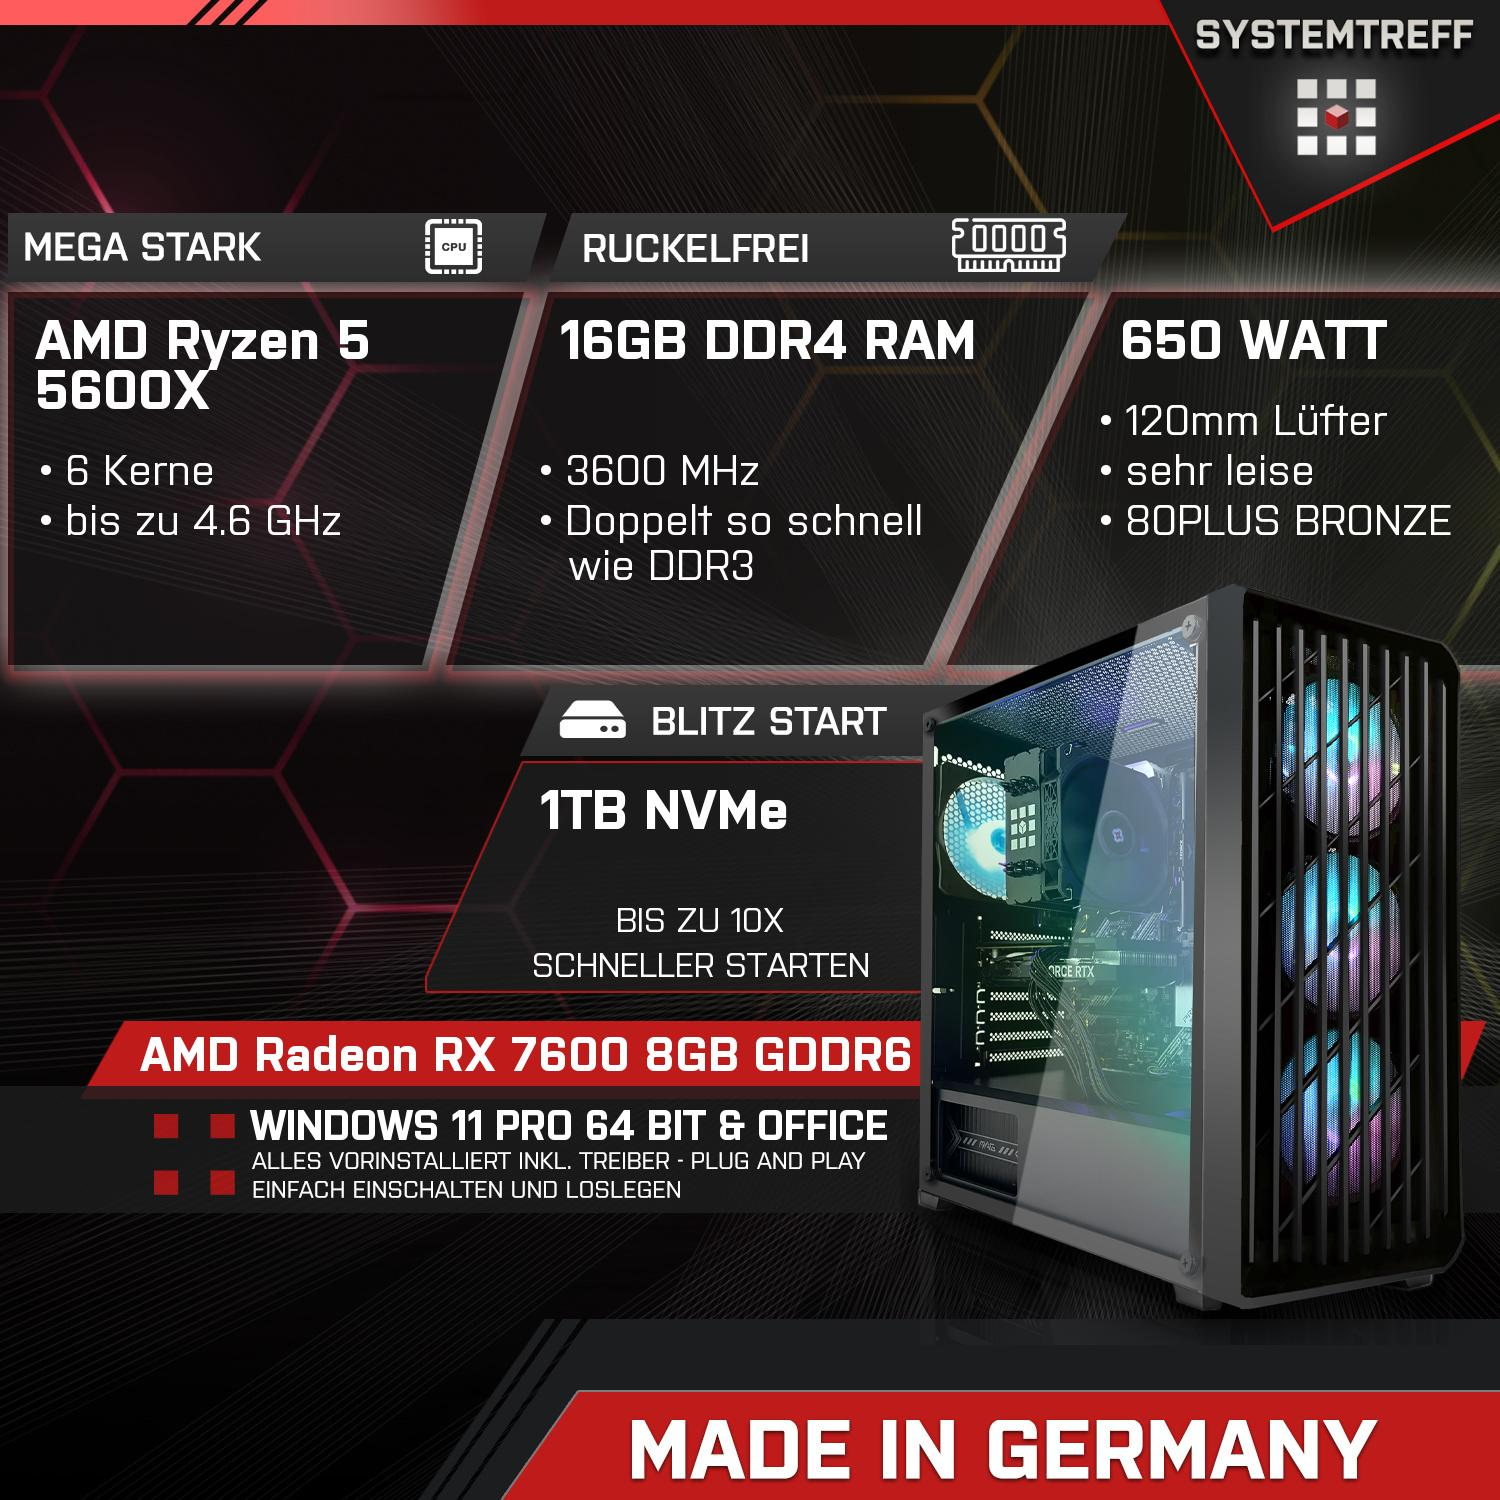 SYSTEMTREFF Gaming Komplett RAM, GB RX GDDR6, 5600X mit Komplett 7600 8 AMD GB 8GB PC Radeon mSSD, AMD 5600X, 1000 Prozessor, 5 GB 16 Ryzen